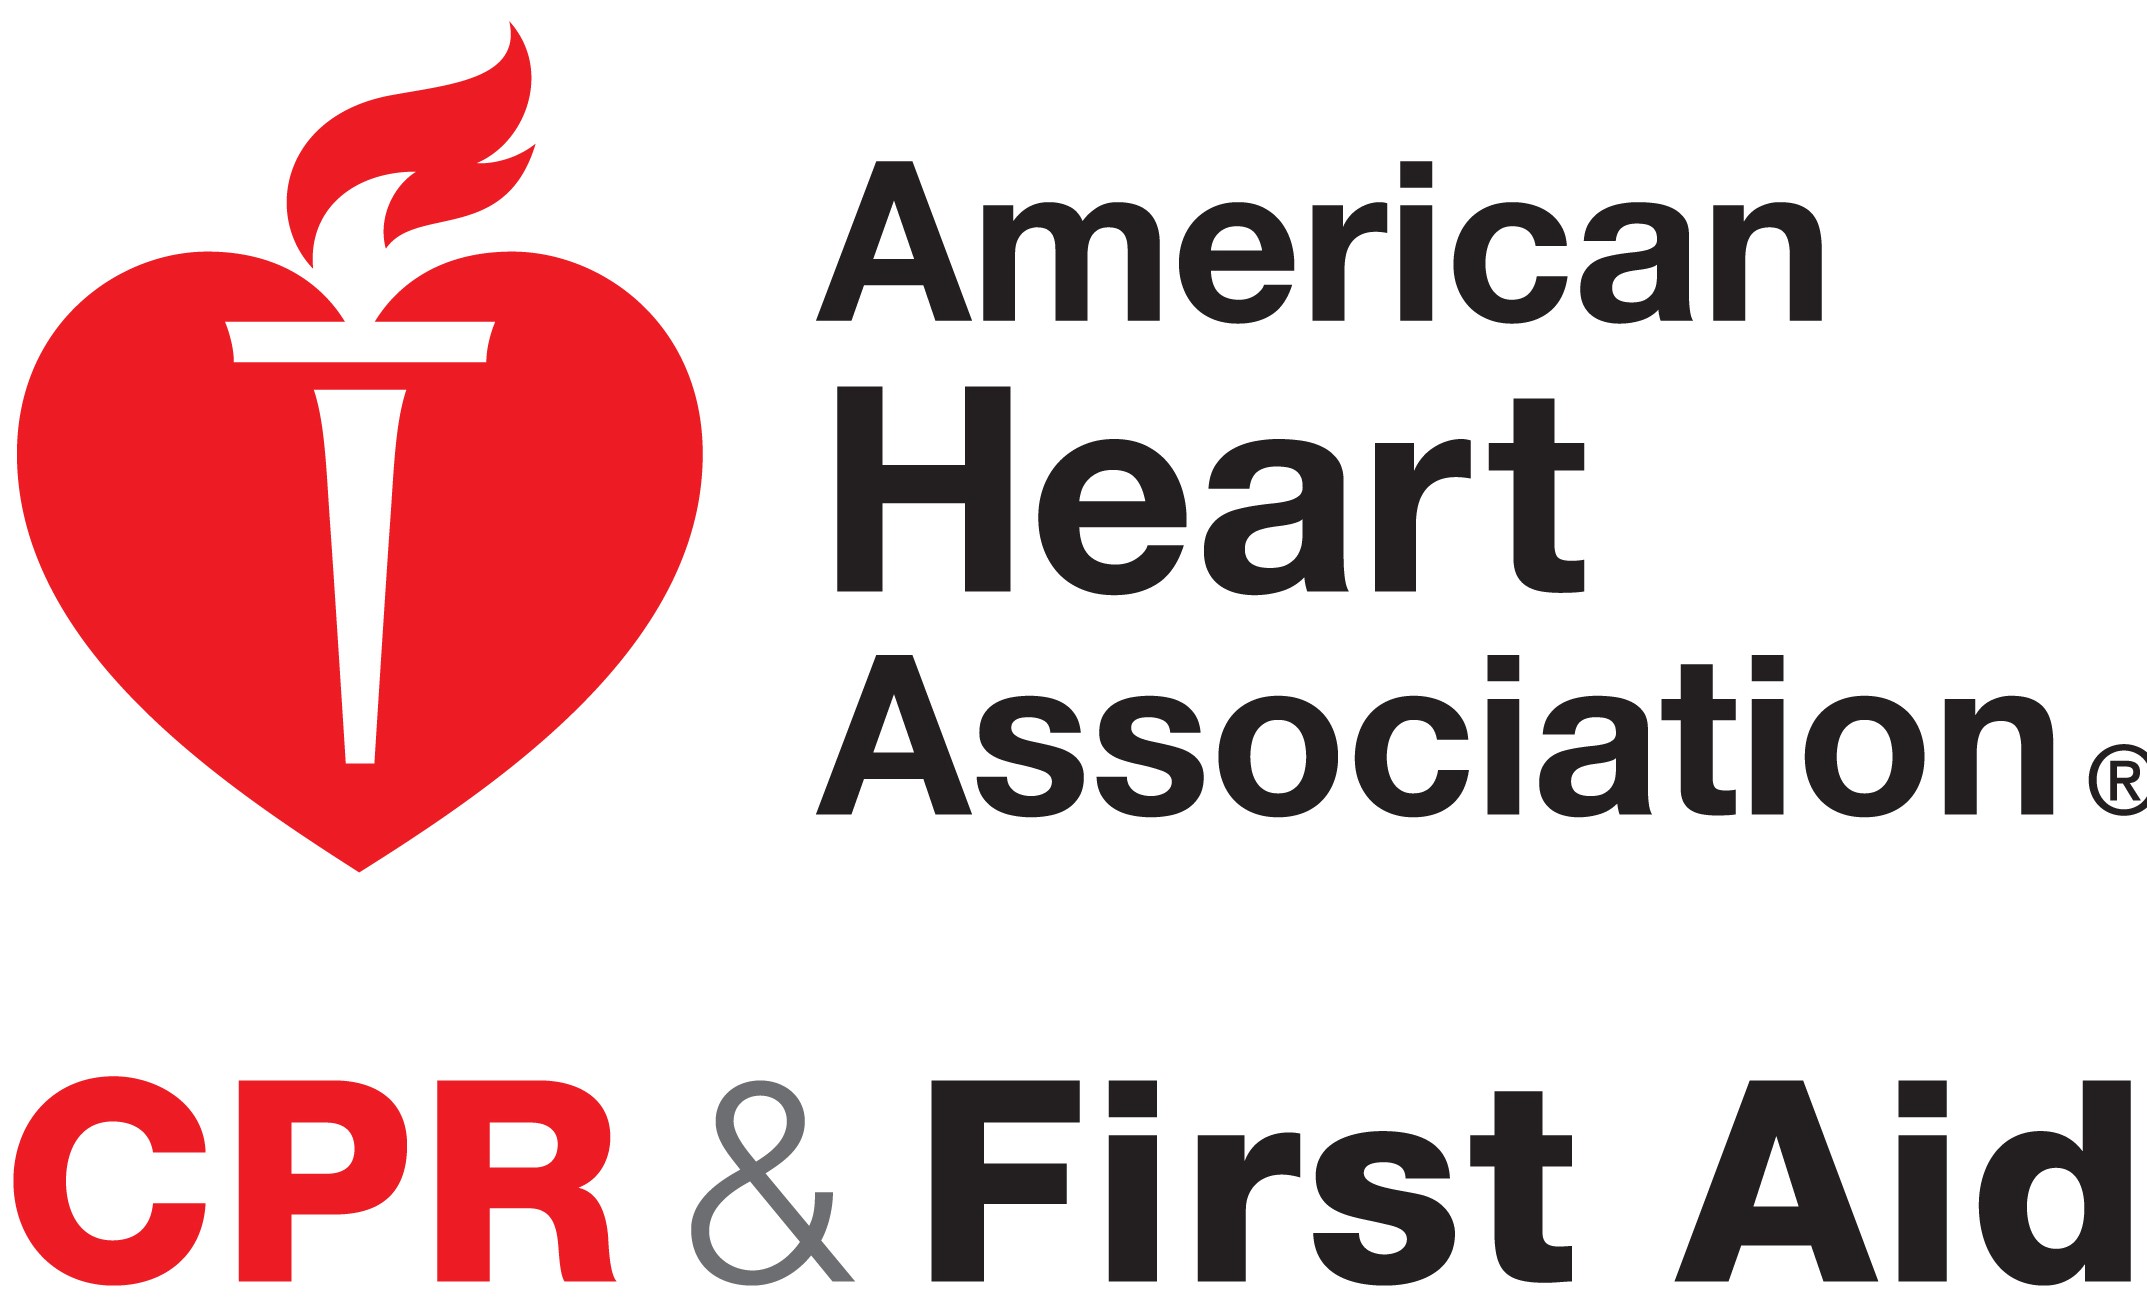 CPR_First_Aid_logo2.jpg